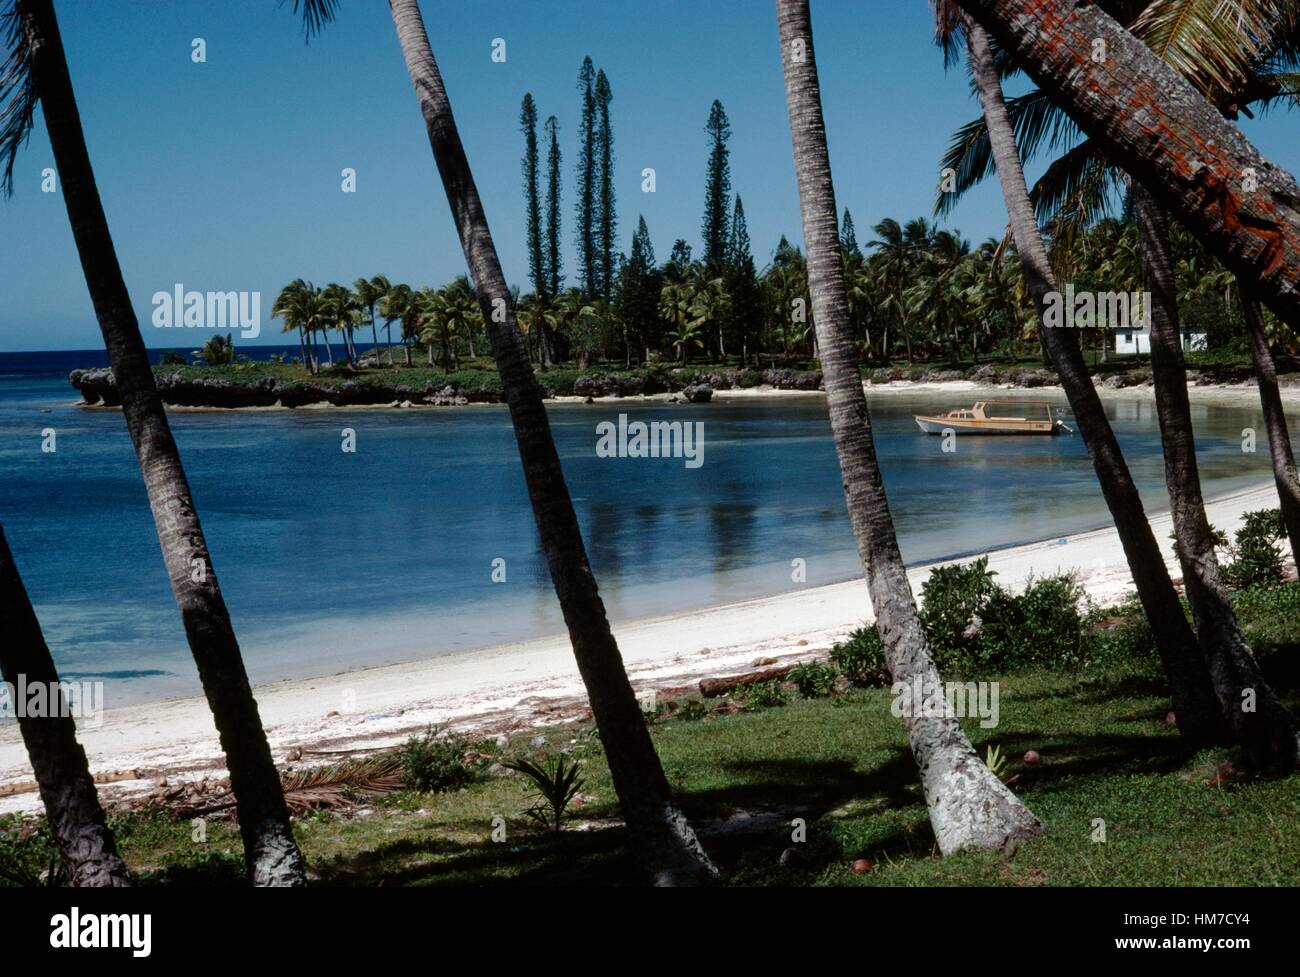 Palmiers et de voile sur la plage de Doueoulou, Lifou, îles Loyauté, Nouvelle-Calédonie, territoire d'outre-mer de la République française. Banque D'Images